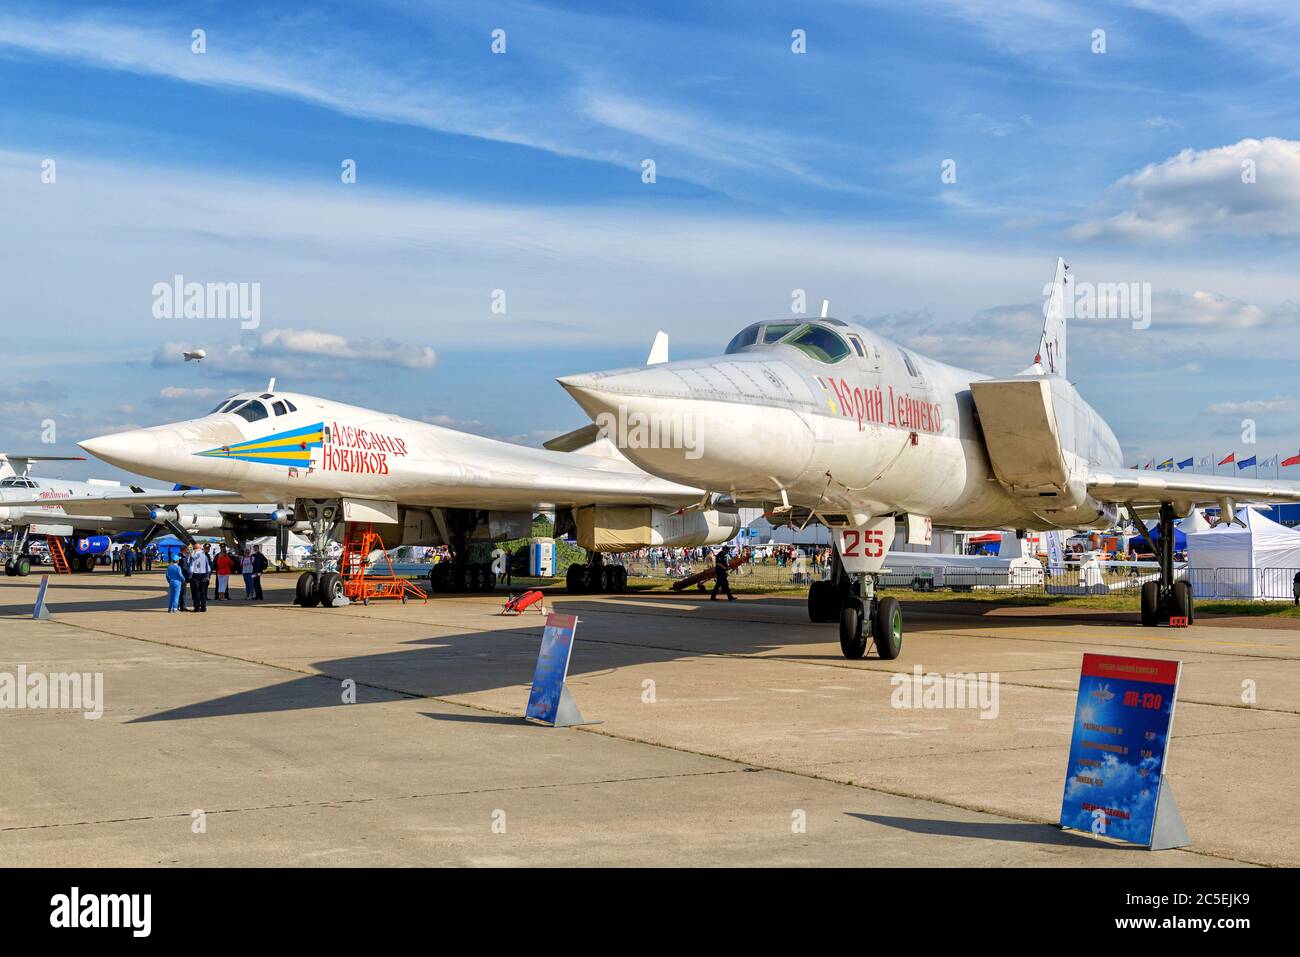 REGIÓN DE MOSCÚ - 28 DE AGOSTO de 2015: Bombarderos estratégicos supersónicos rusos Tupolev tu-160 'Blackjack' y tu-22M3 'contragolpe' en la Aviación Internacional Foto de stock